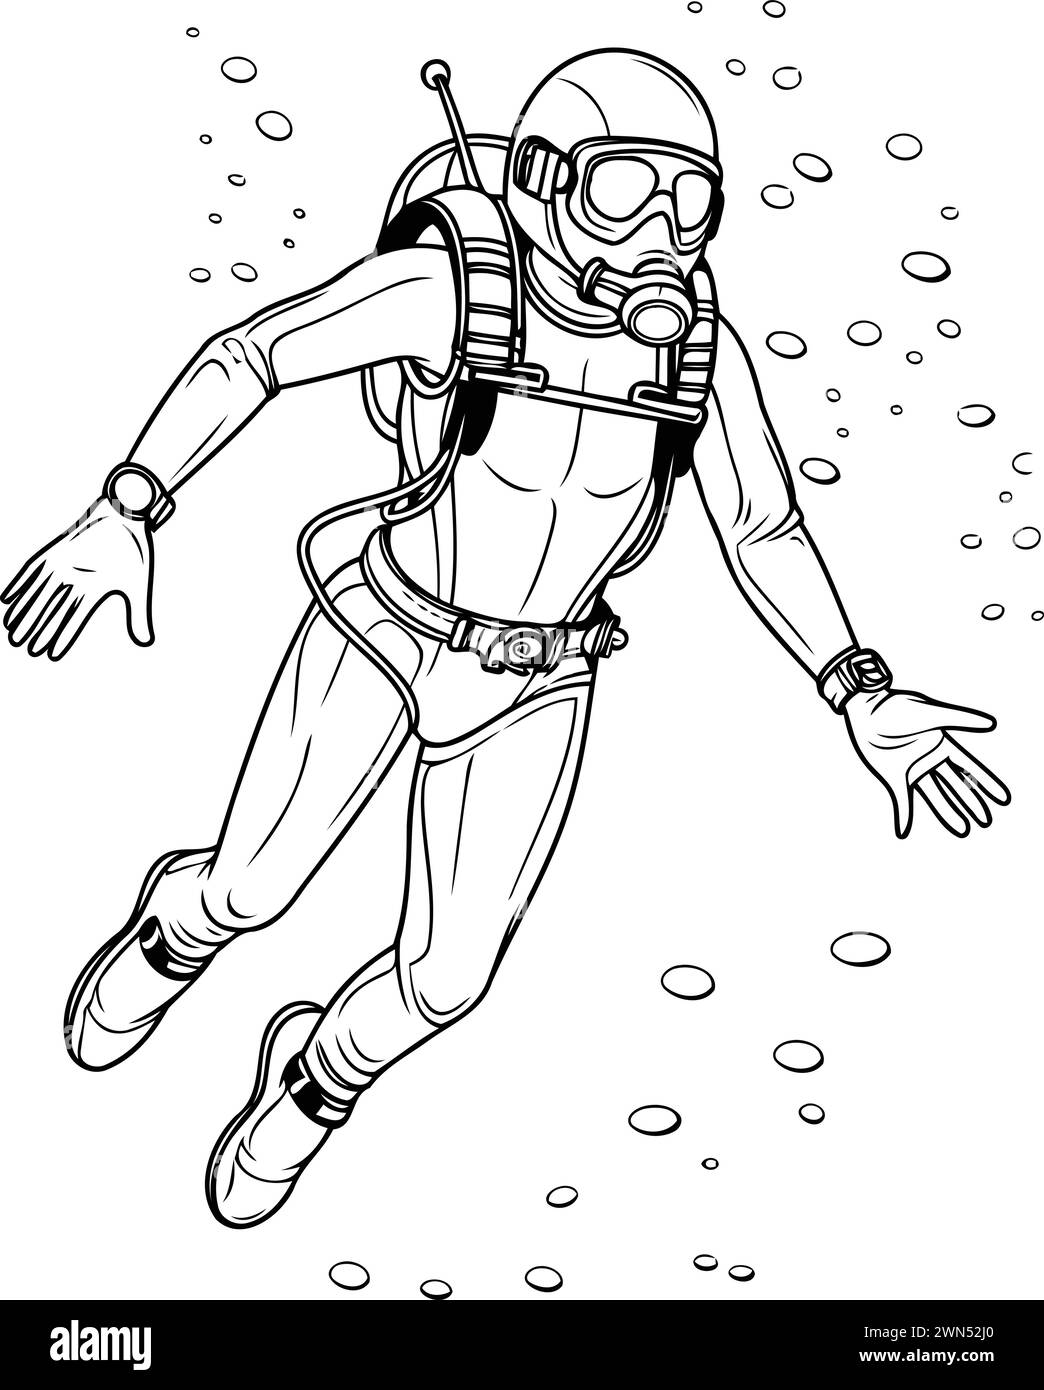 Schizzo di un subacqueo con una tuta da immersione. Illustrazione vettoriale. Illustrazione Vettoriale